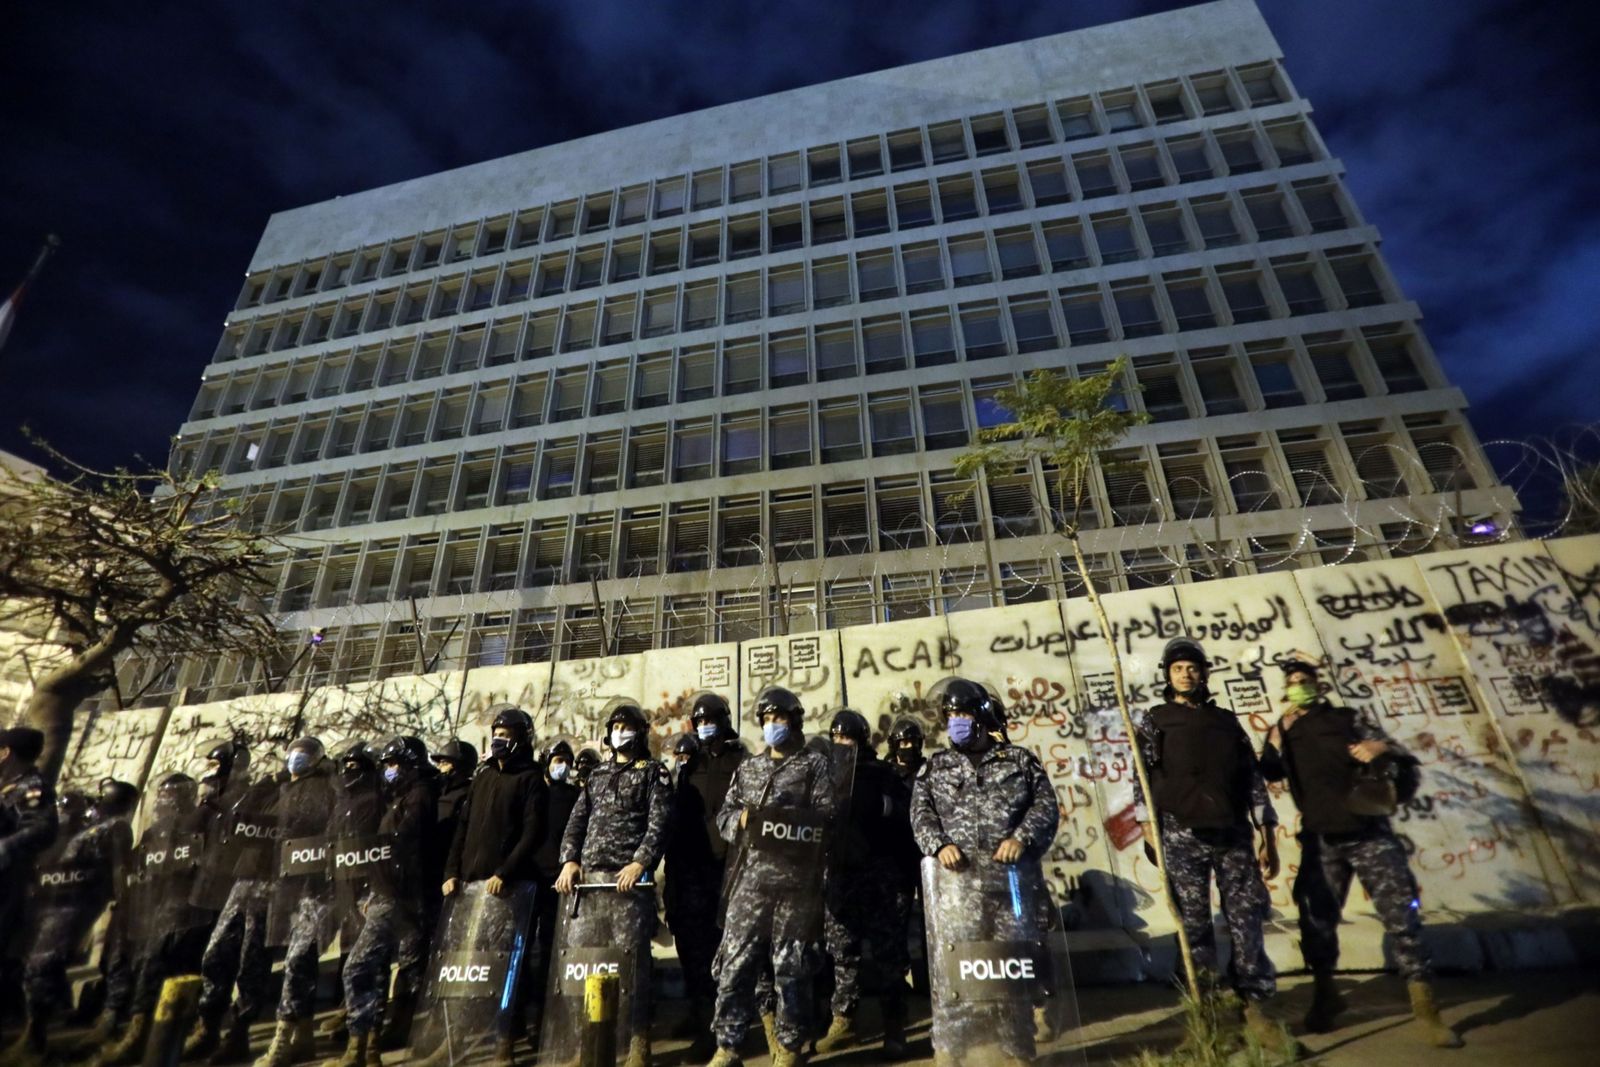 عناصر من شرطة مكافحة الشغب أمام مقرّ المصرف المركزي اللبناني خلال تظاهرة مناهضة للحكومة في بيروت - 28 أبريل 2020 - Bloomberg